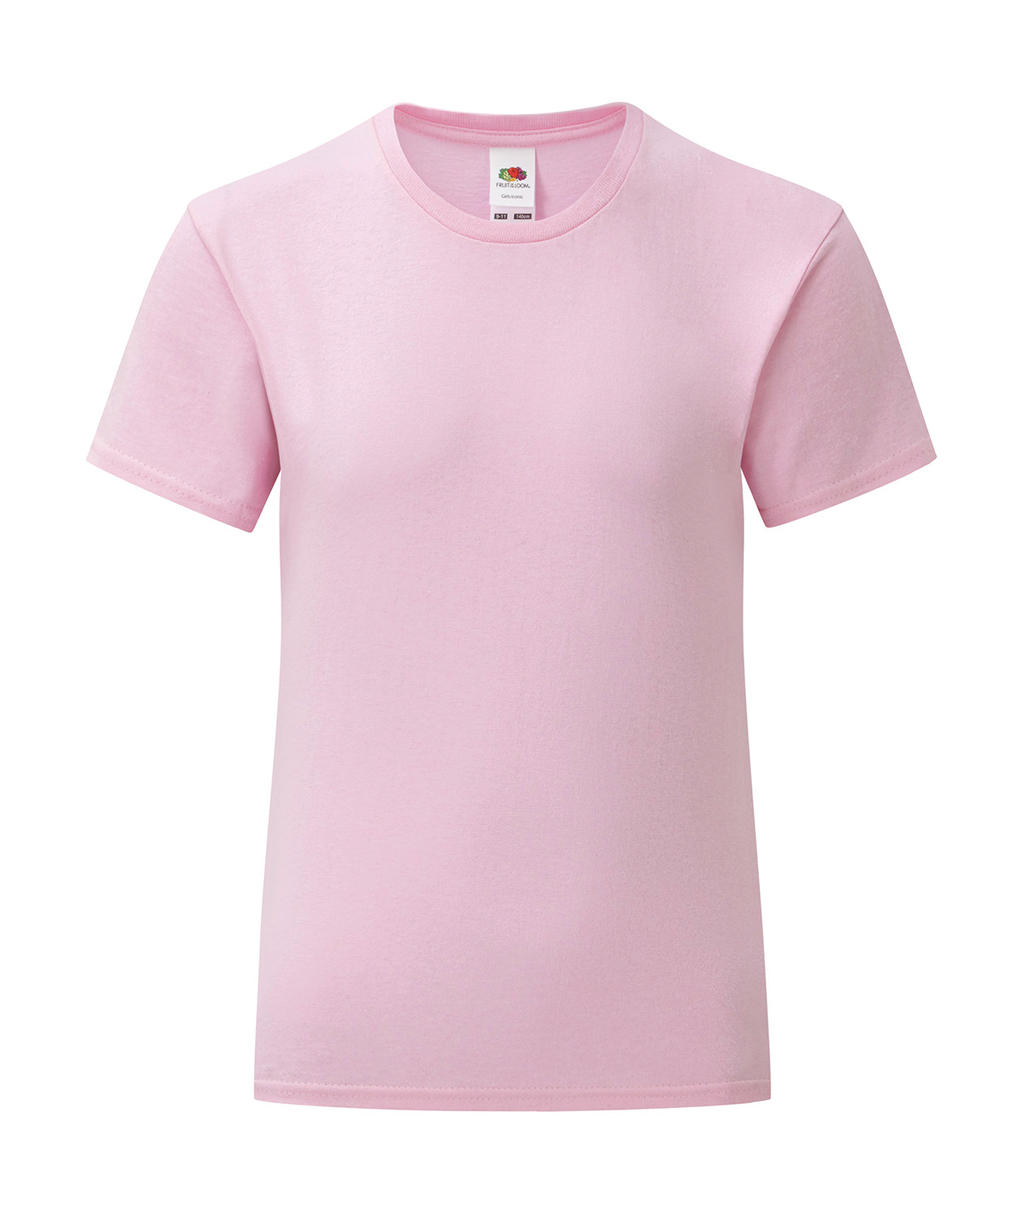 Dívčí tričko Iconic T 150 Barva: růžová, Velikost: 7-8 let